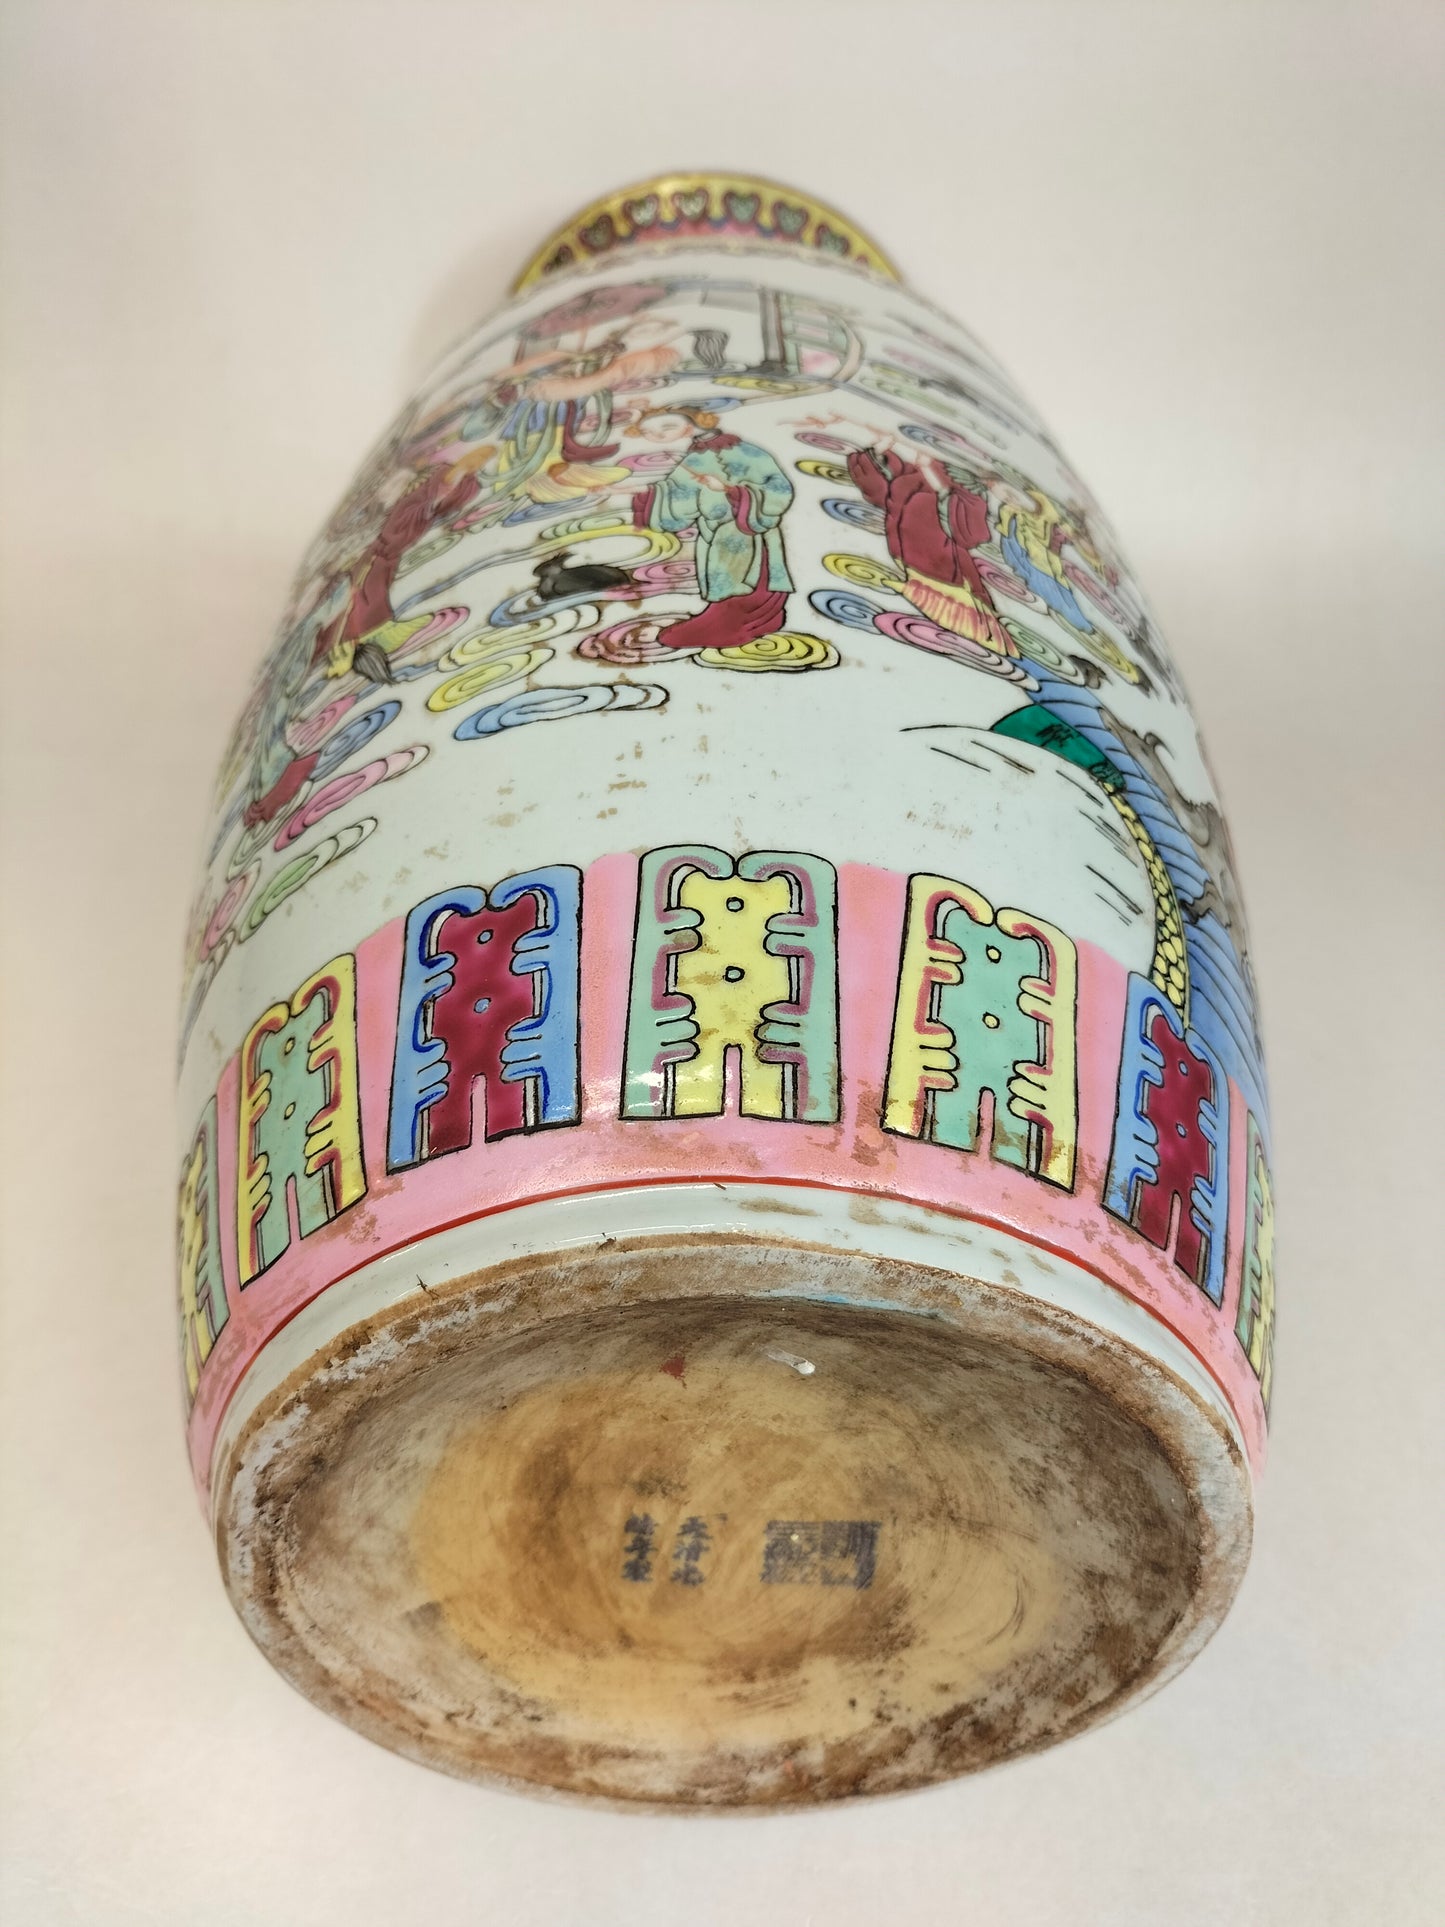 大型中国 XL 粉彩花瓶，饰有皇家场景// 20 世纪中叶